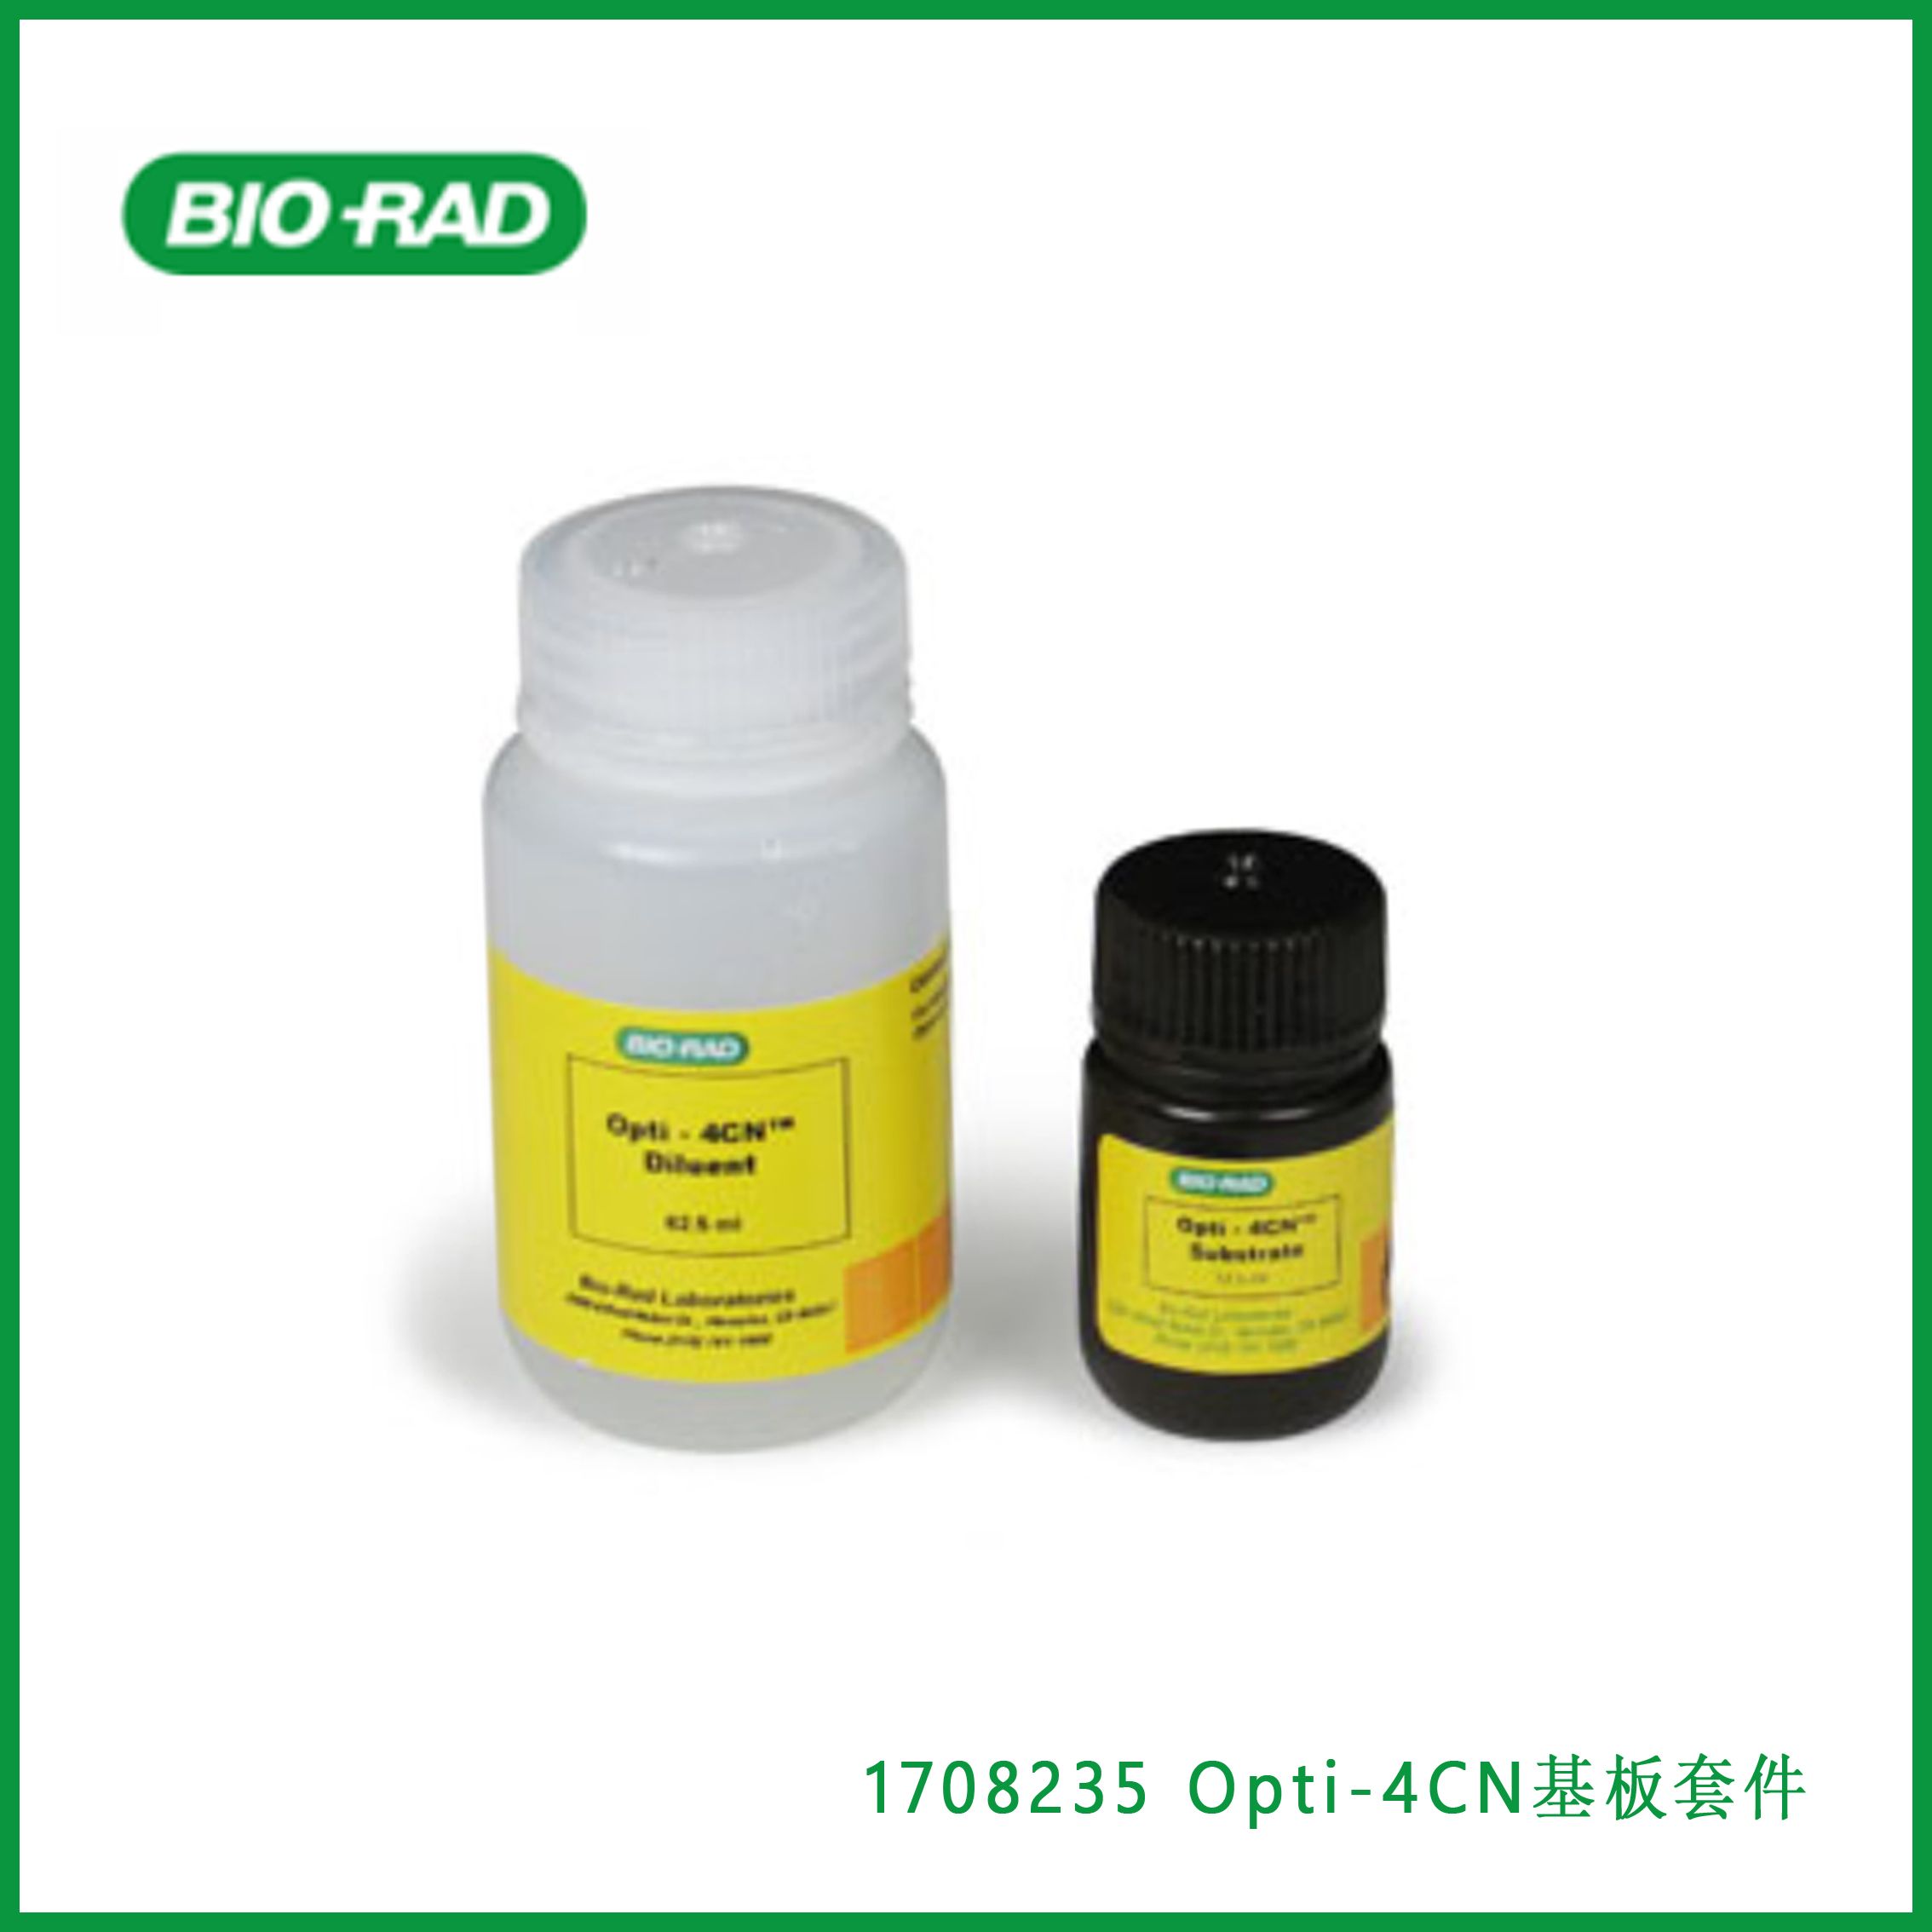 伯乐Bio-Rad1708235 Opti-4CN Substrate Kit， ​​​​​​​Opti-4CN底物和检测试剂盒，现货